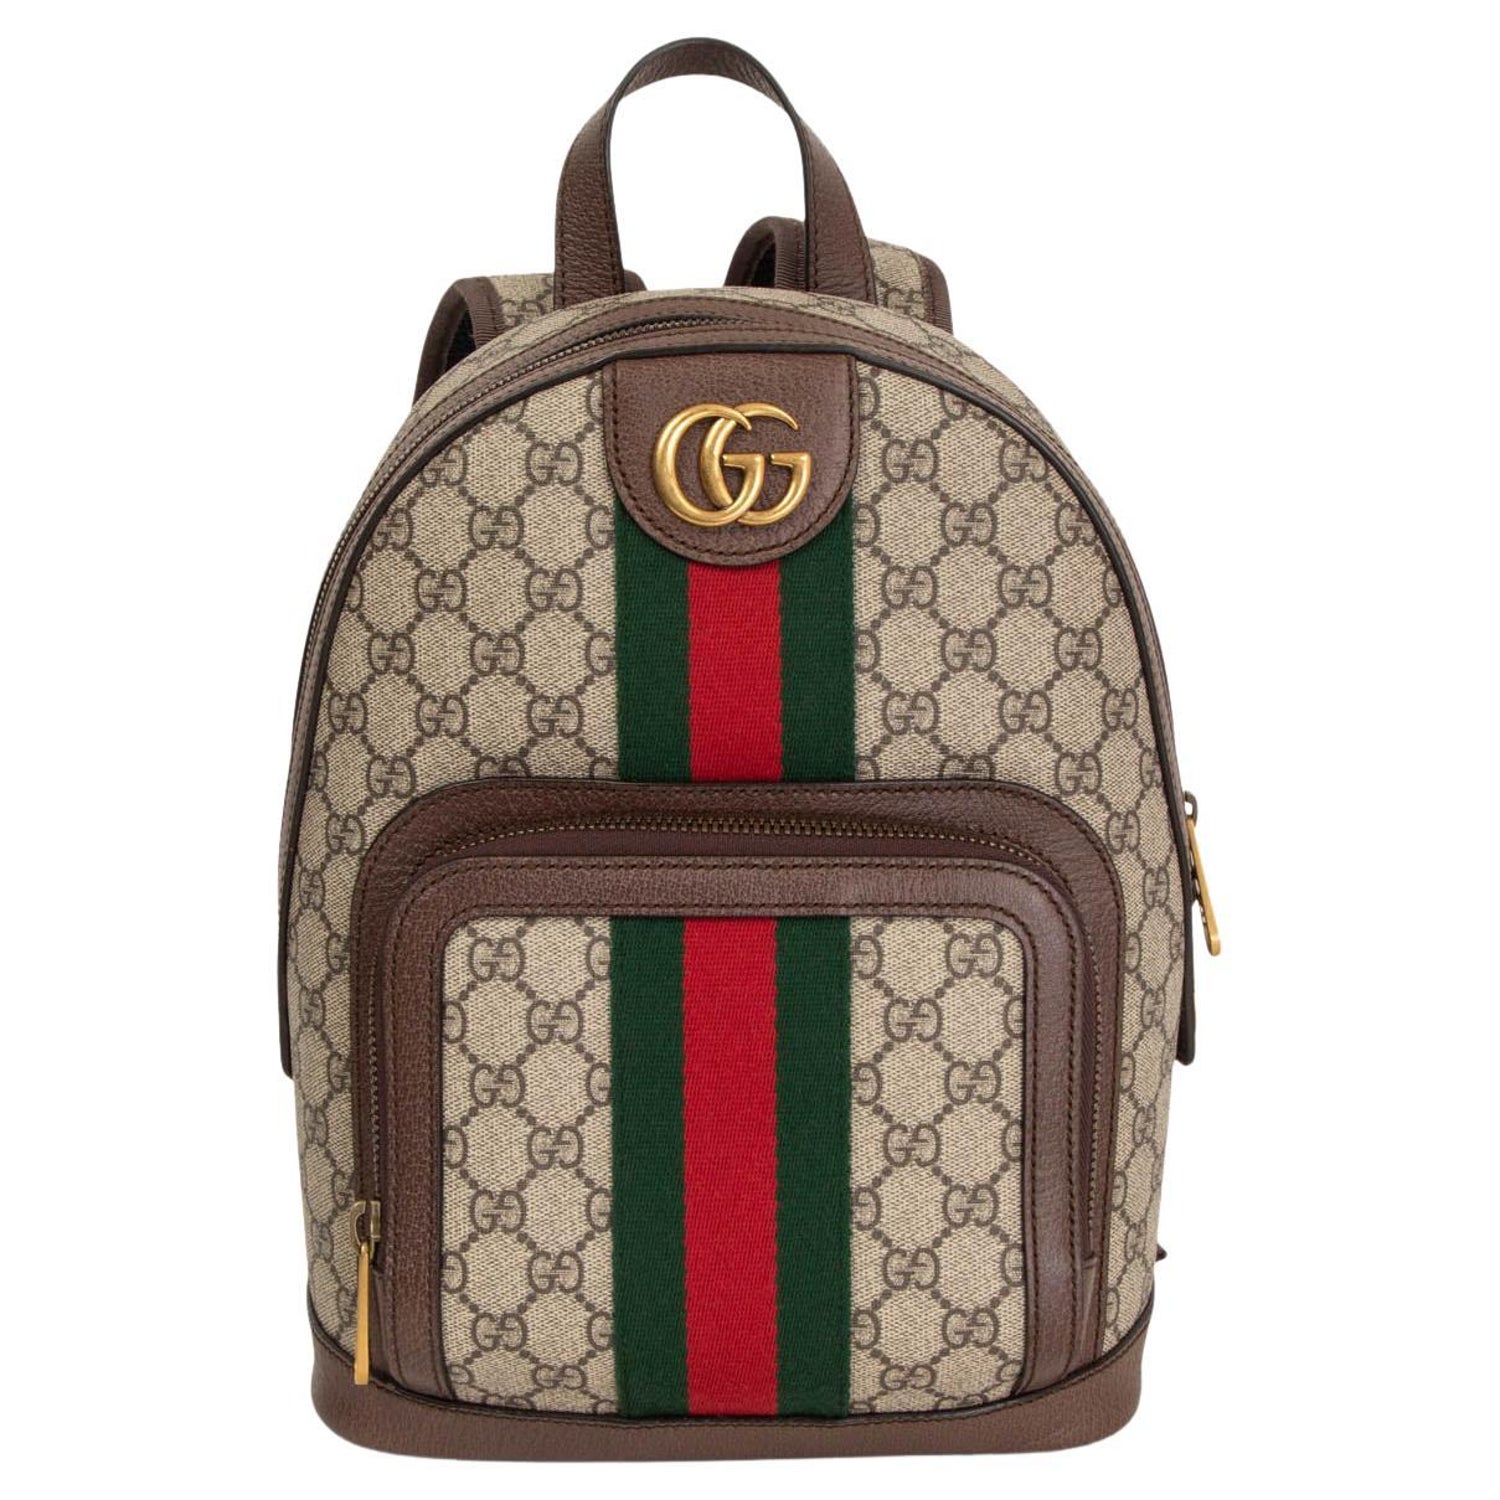 Intensiv lag trække sig tilbage Gucci Ophidia Floral Backpack - For Sale on 1stDibs | gucci floral backpack,  floral gucci backpack, gucci backpack floral